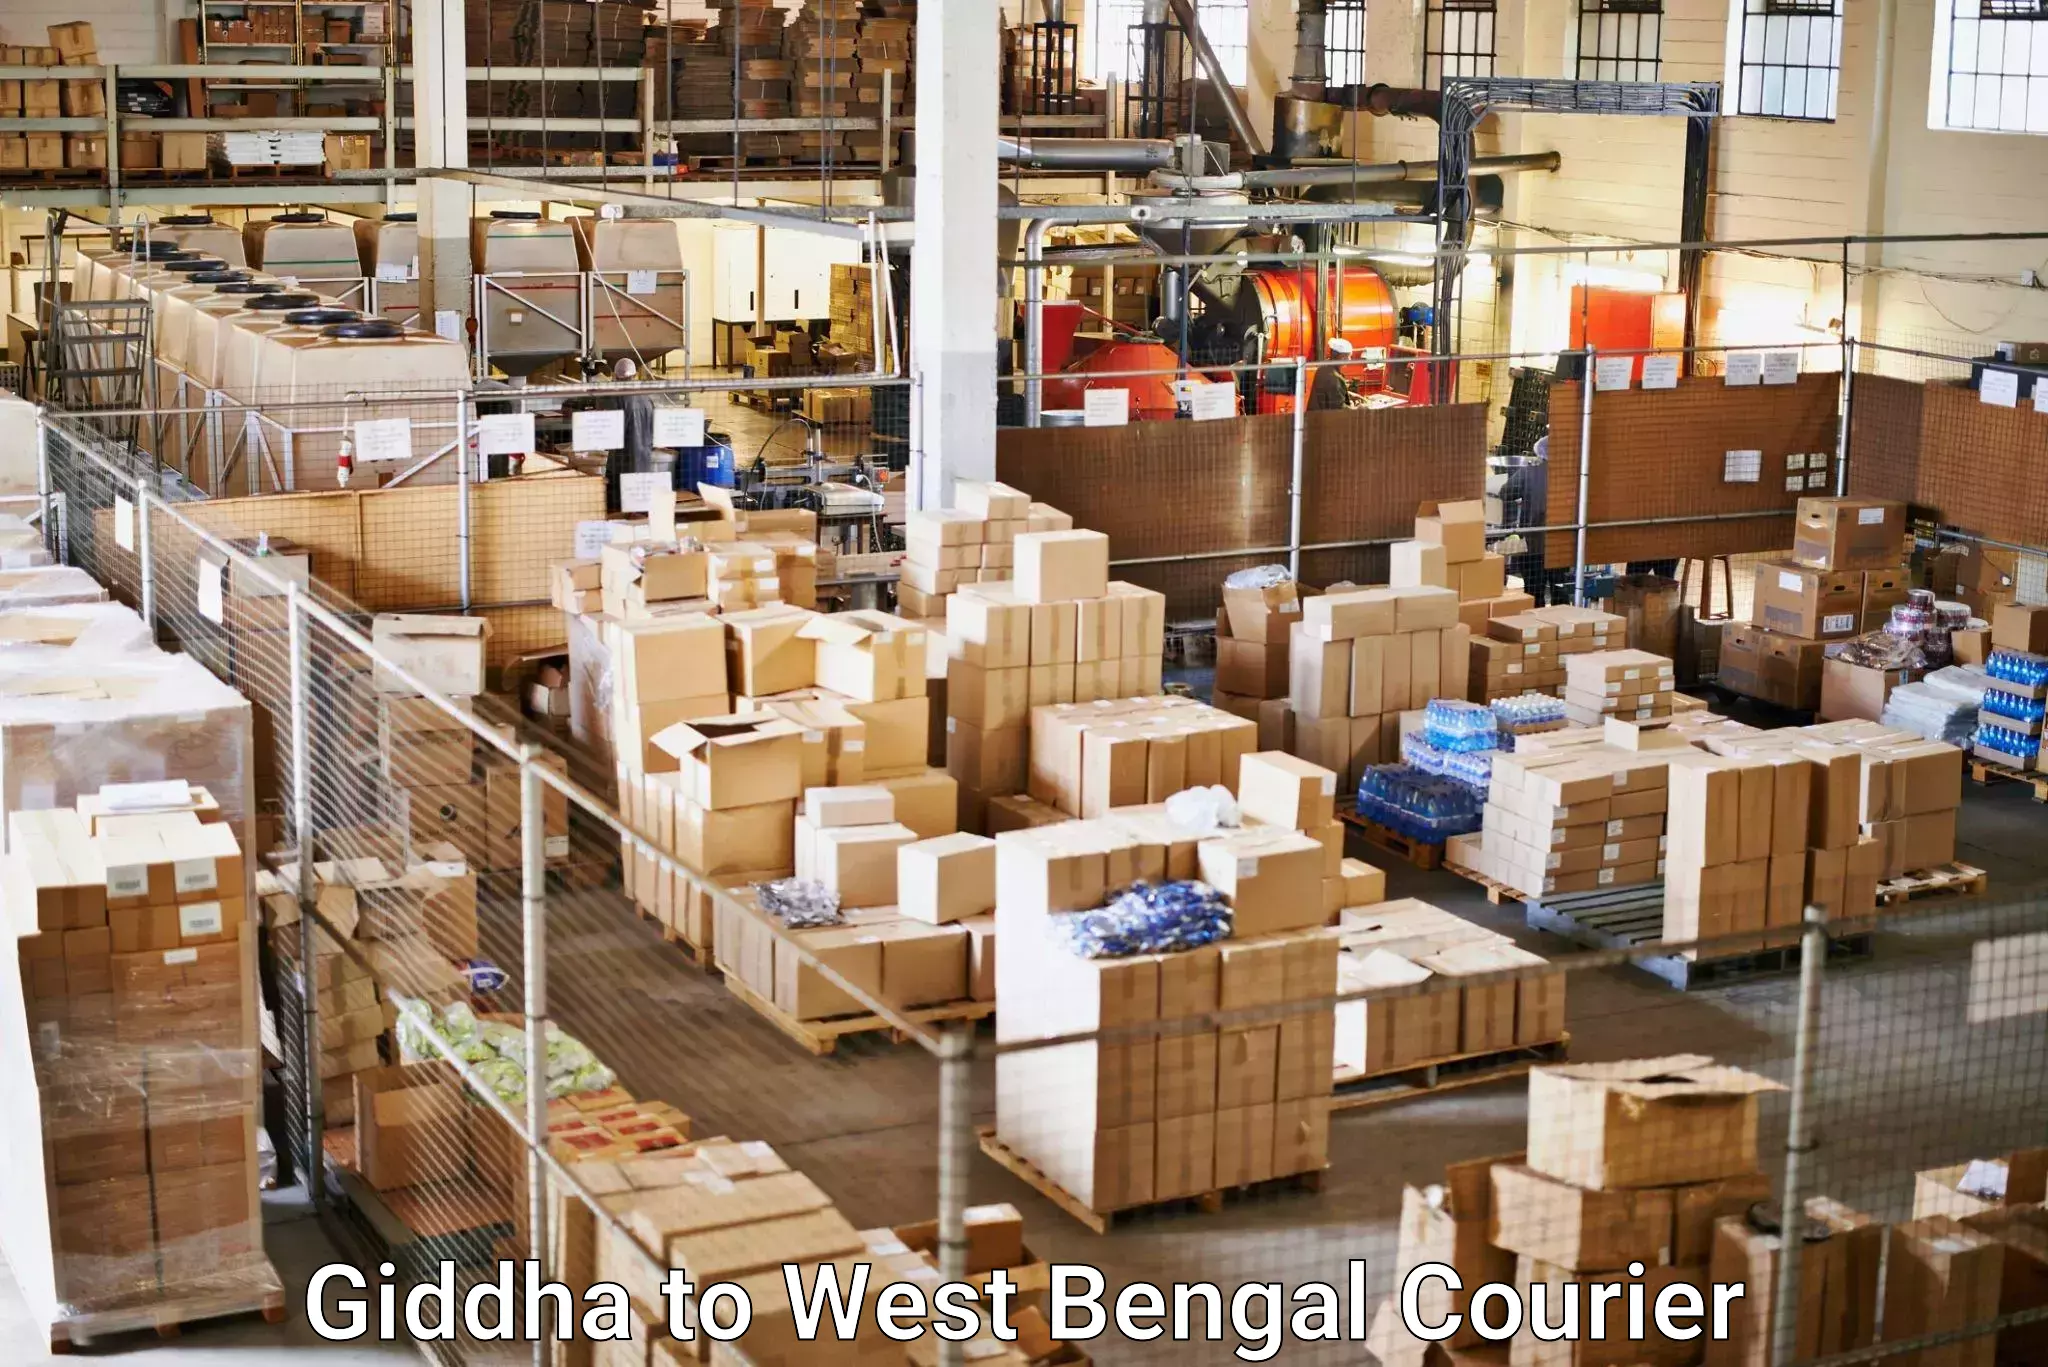 Efficient shipping platforms Giddha to Bongaon